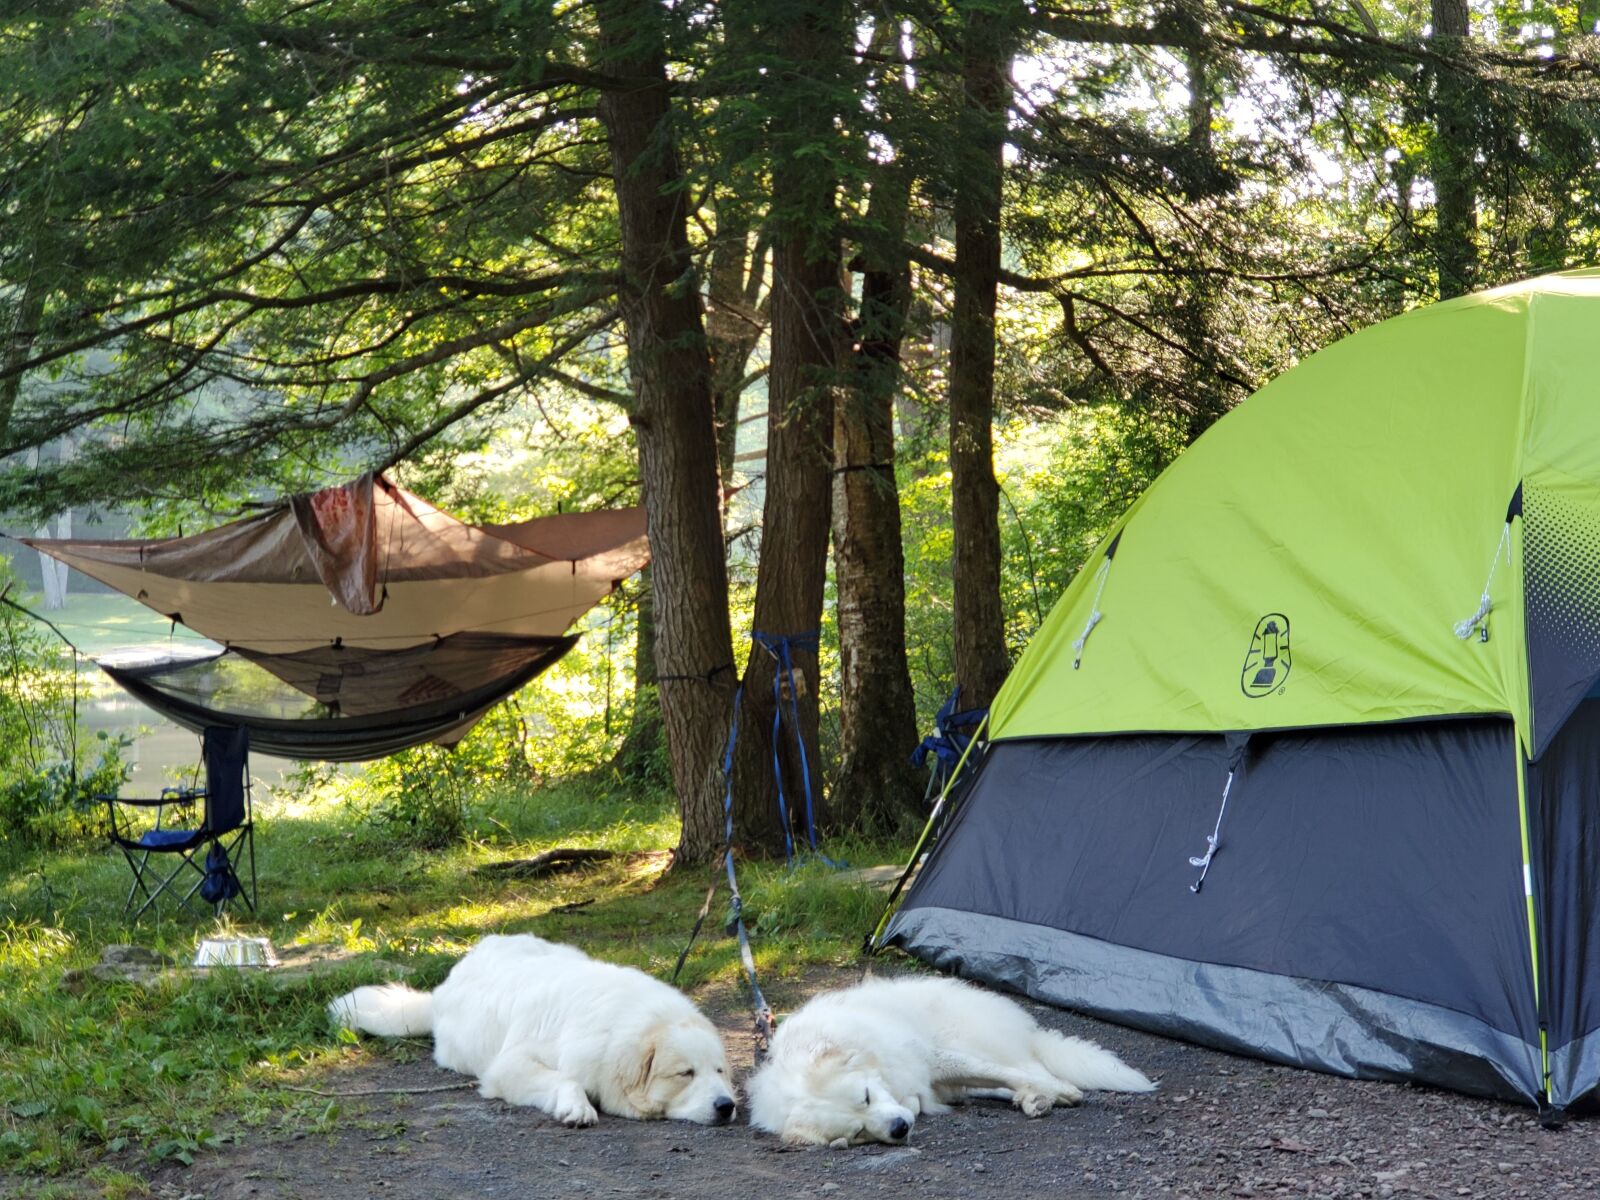 Samsung Galaxy S10 sample photo. Pyreneese, camping, hammock photography